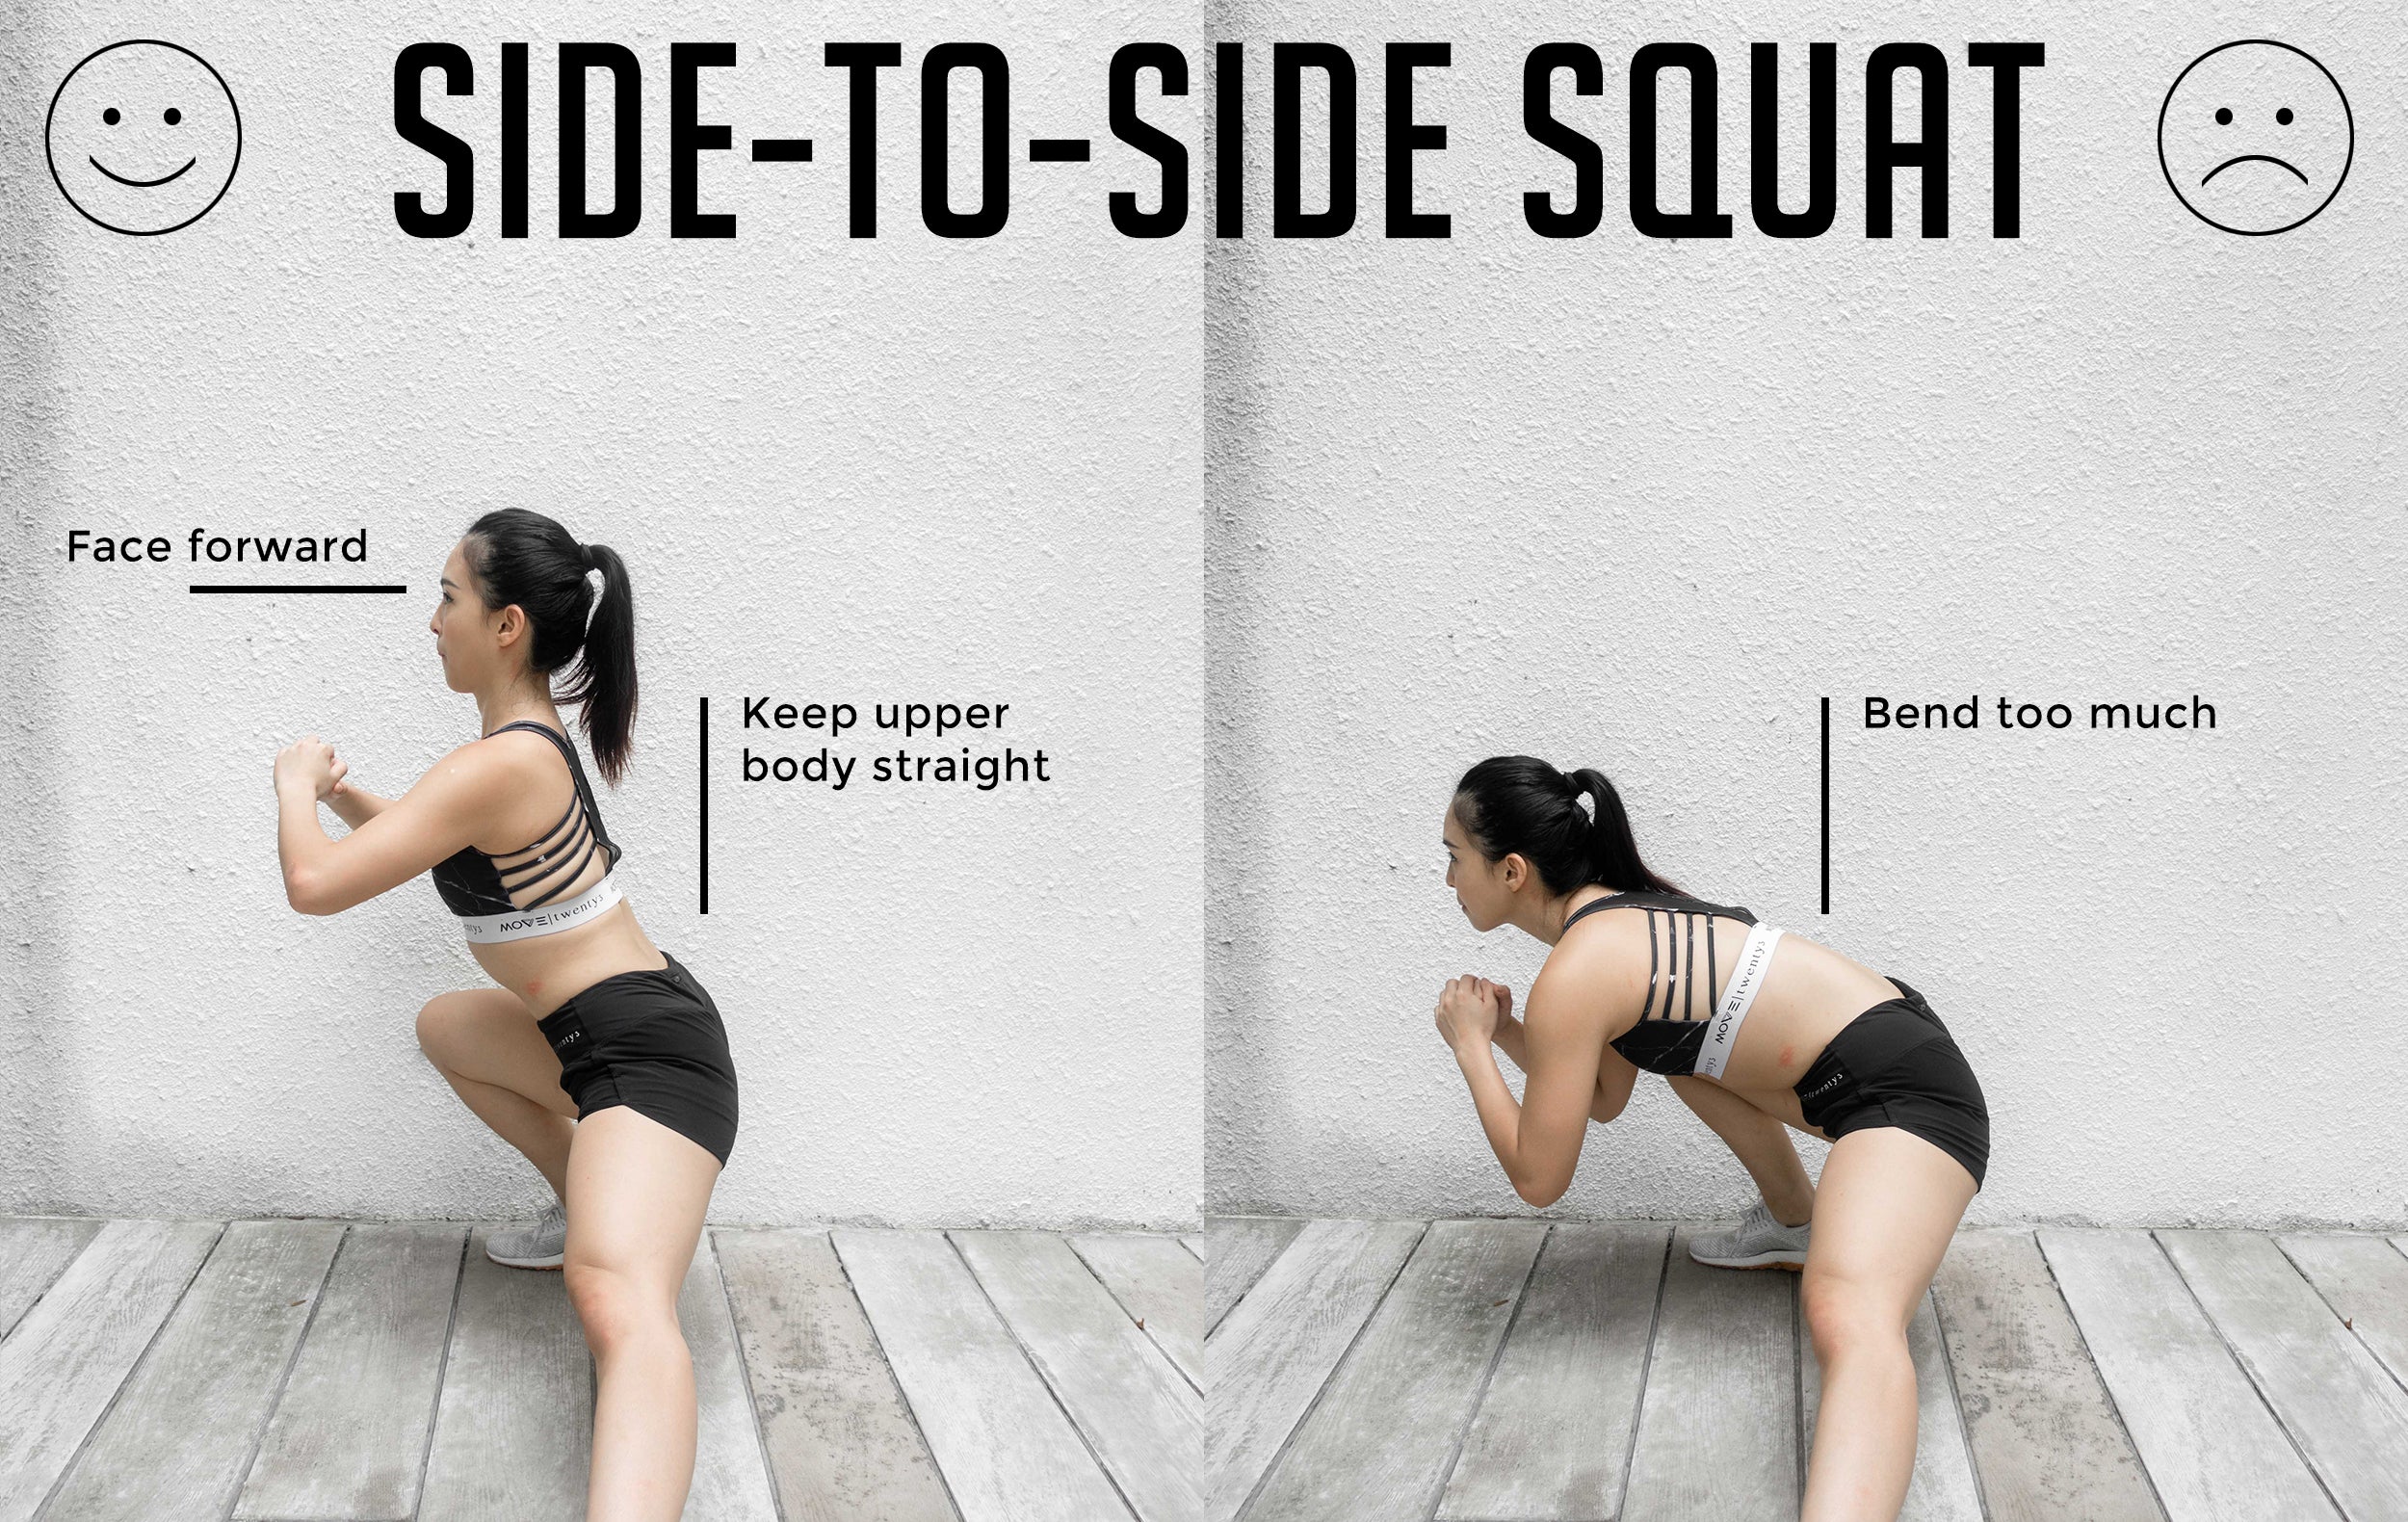 Side-To-Side Squat Good Versus Bad Form